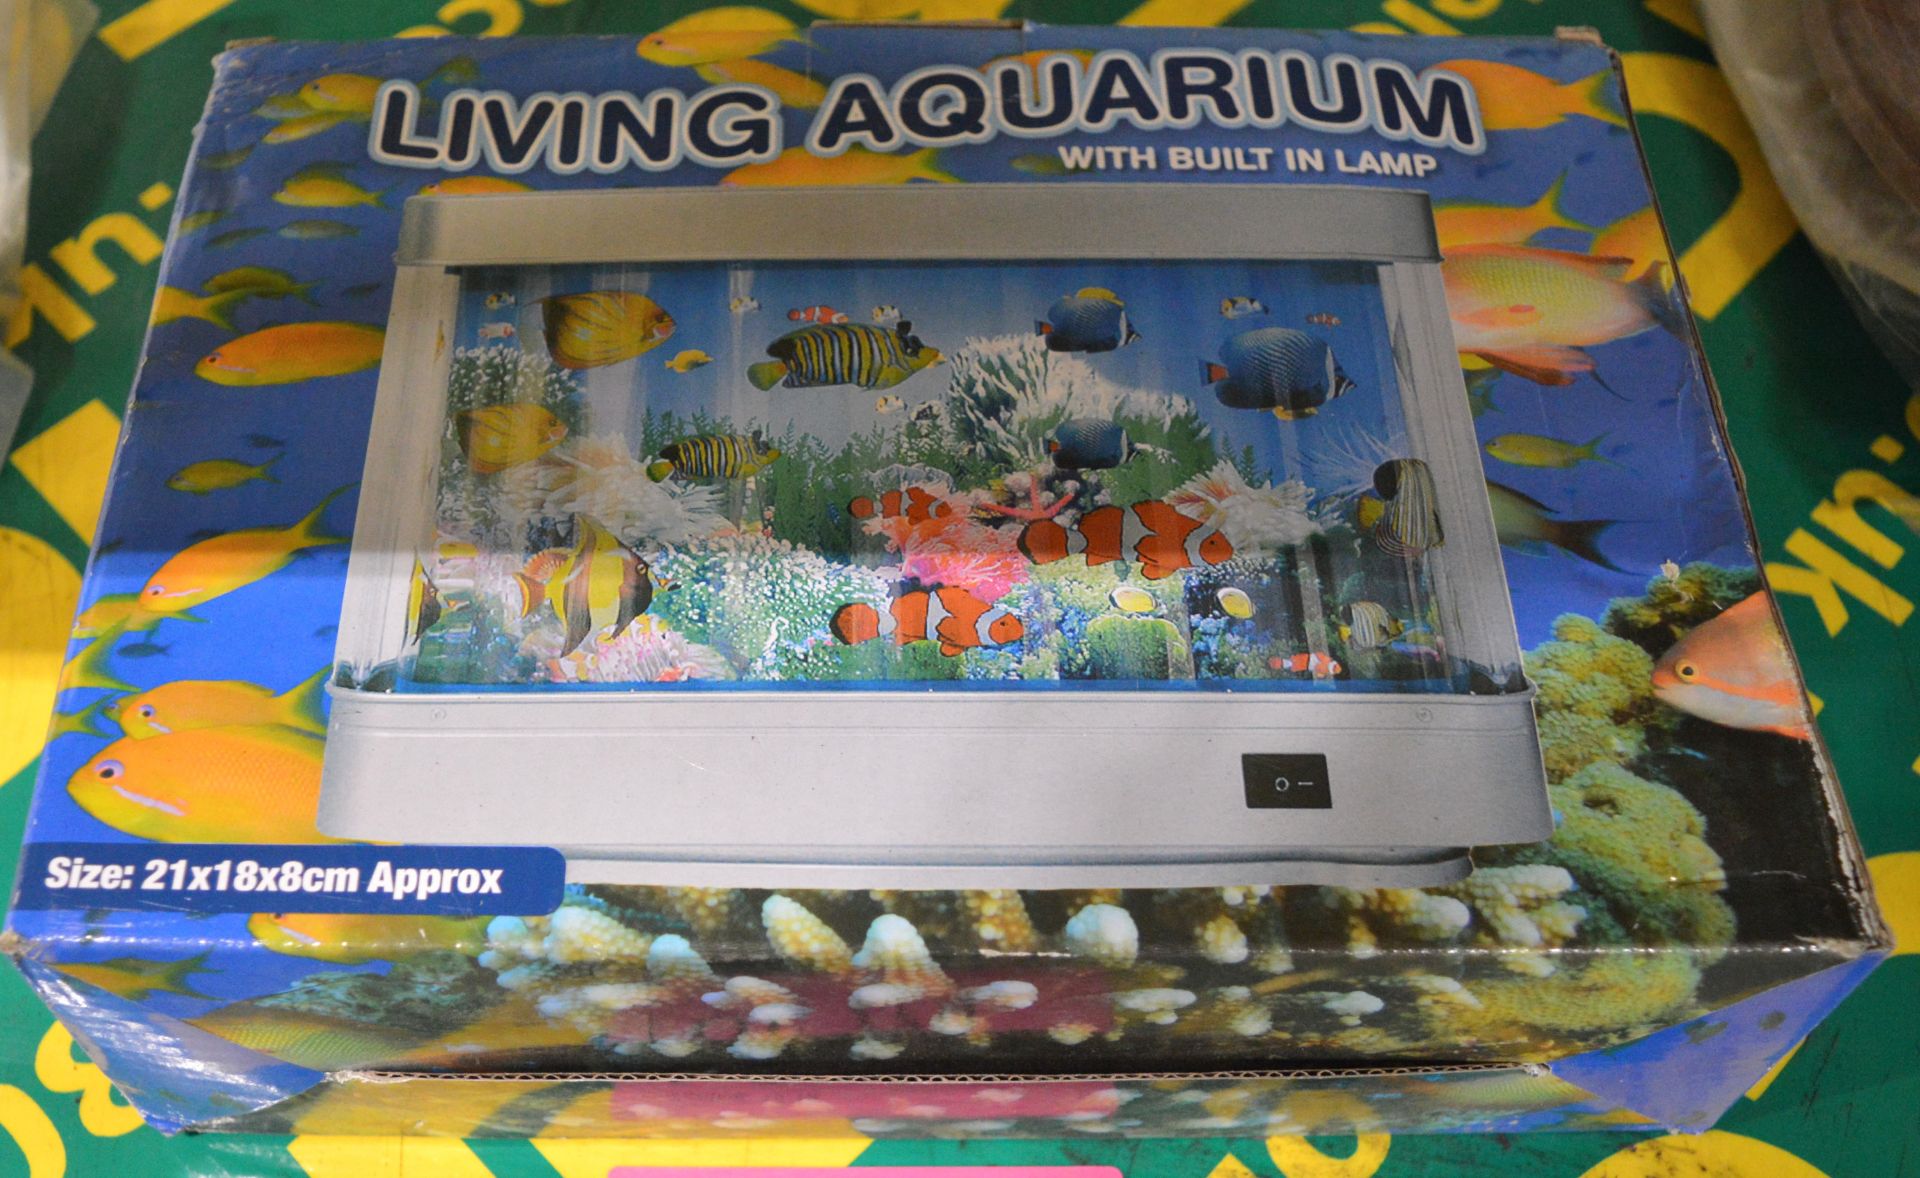 Living Aquarium.